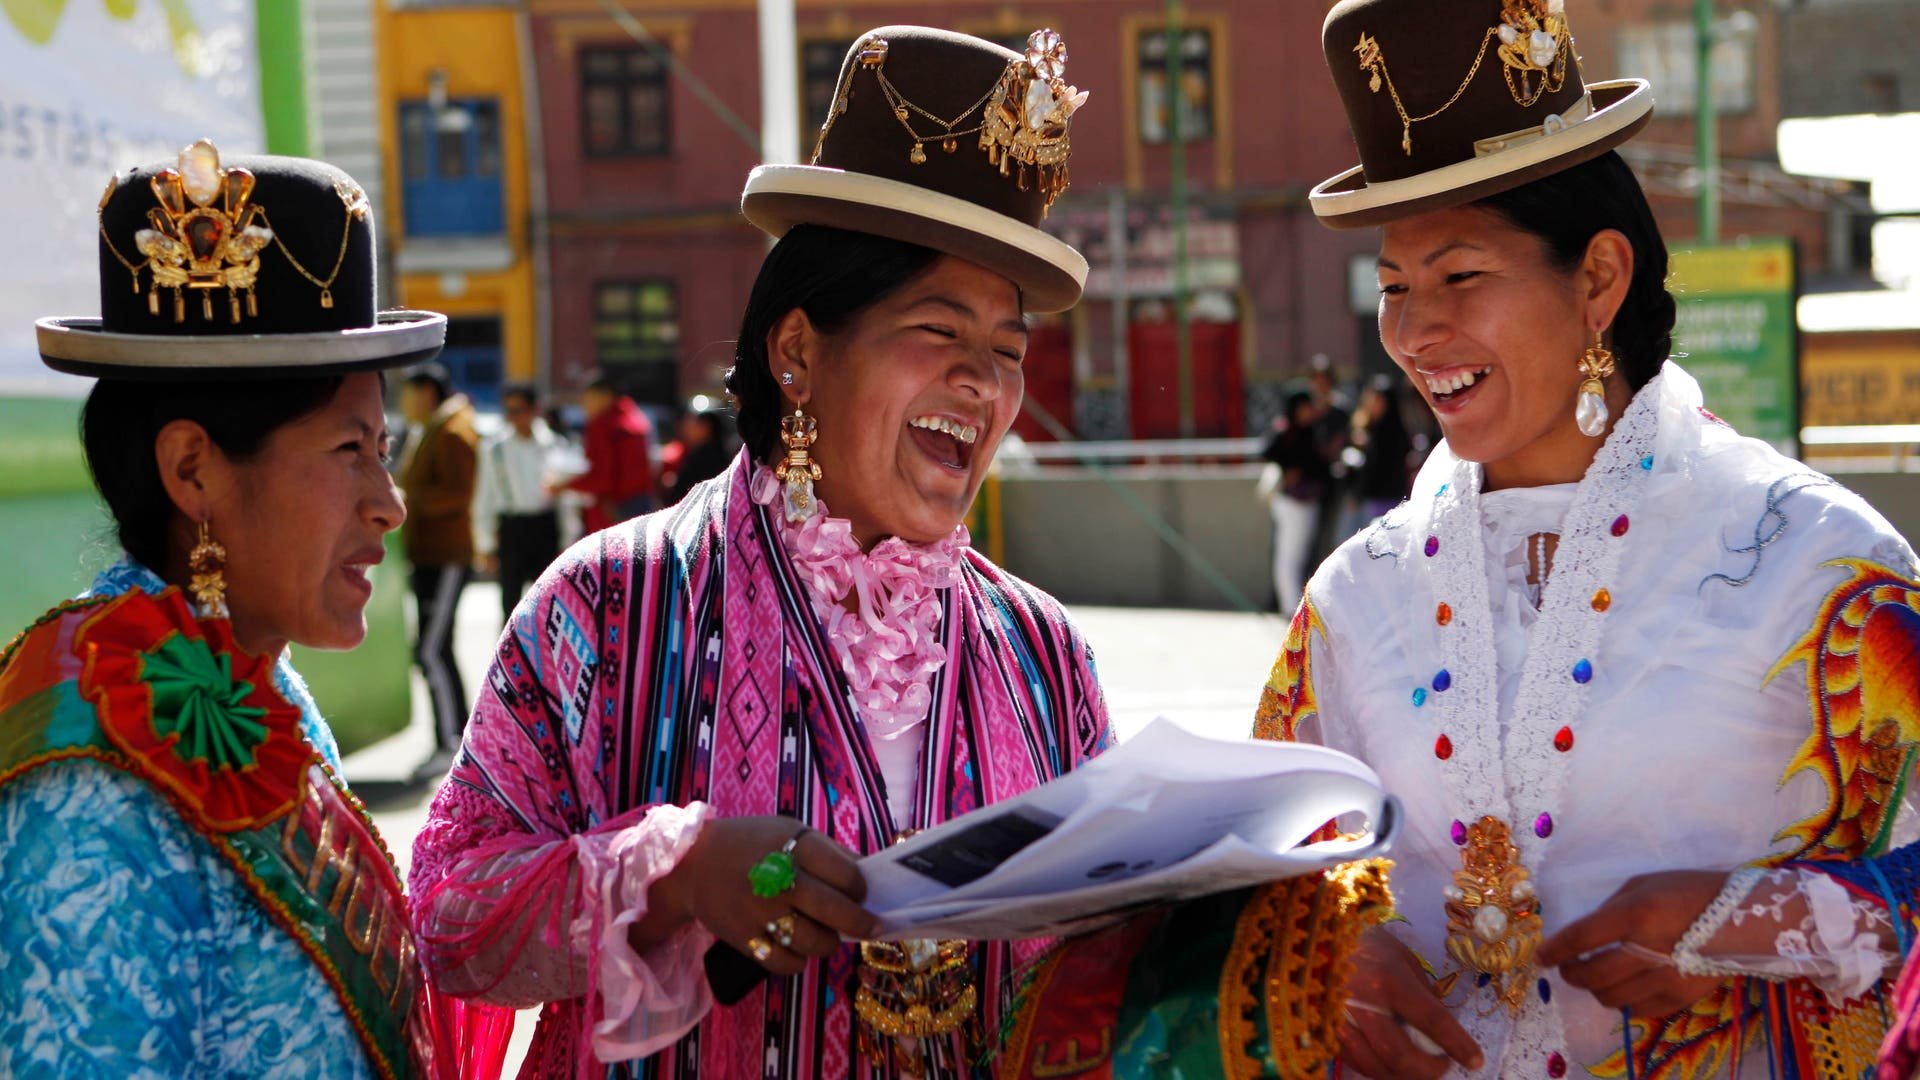 Быт в южной америке. Чолита Боливия. Чолитас в Боливии. Боливия испаноязычные боливийцы. Народы Южной Америки боливийцы.